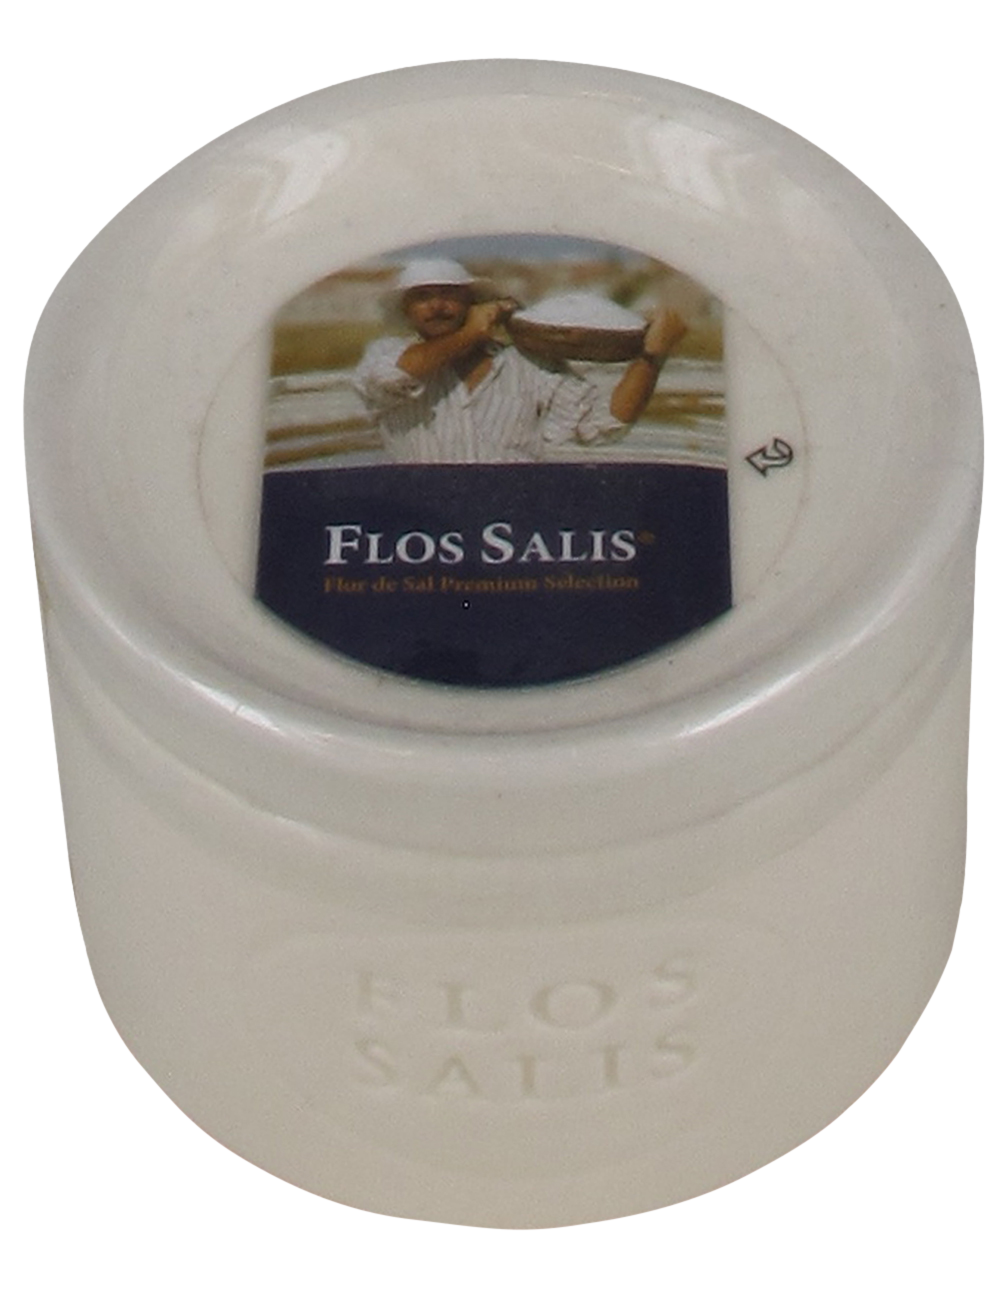 Flos Salis im Tischbehälter 100g.